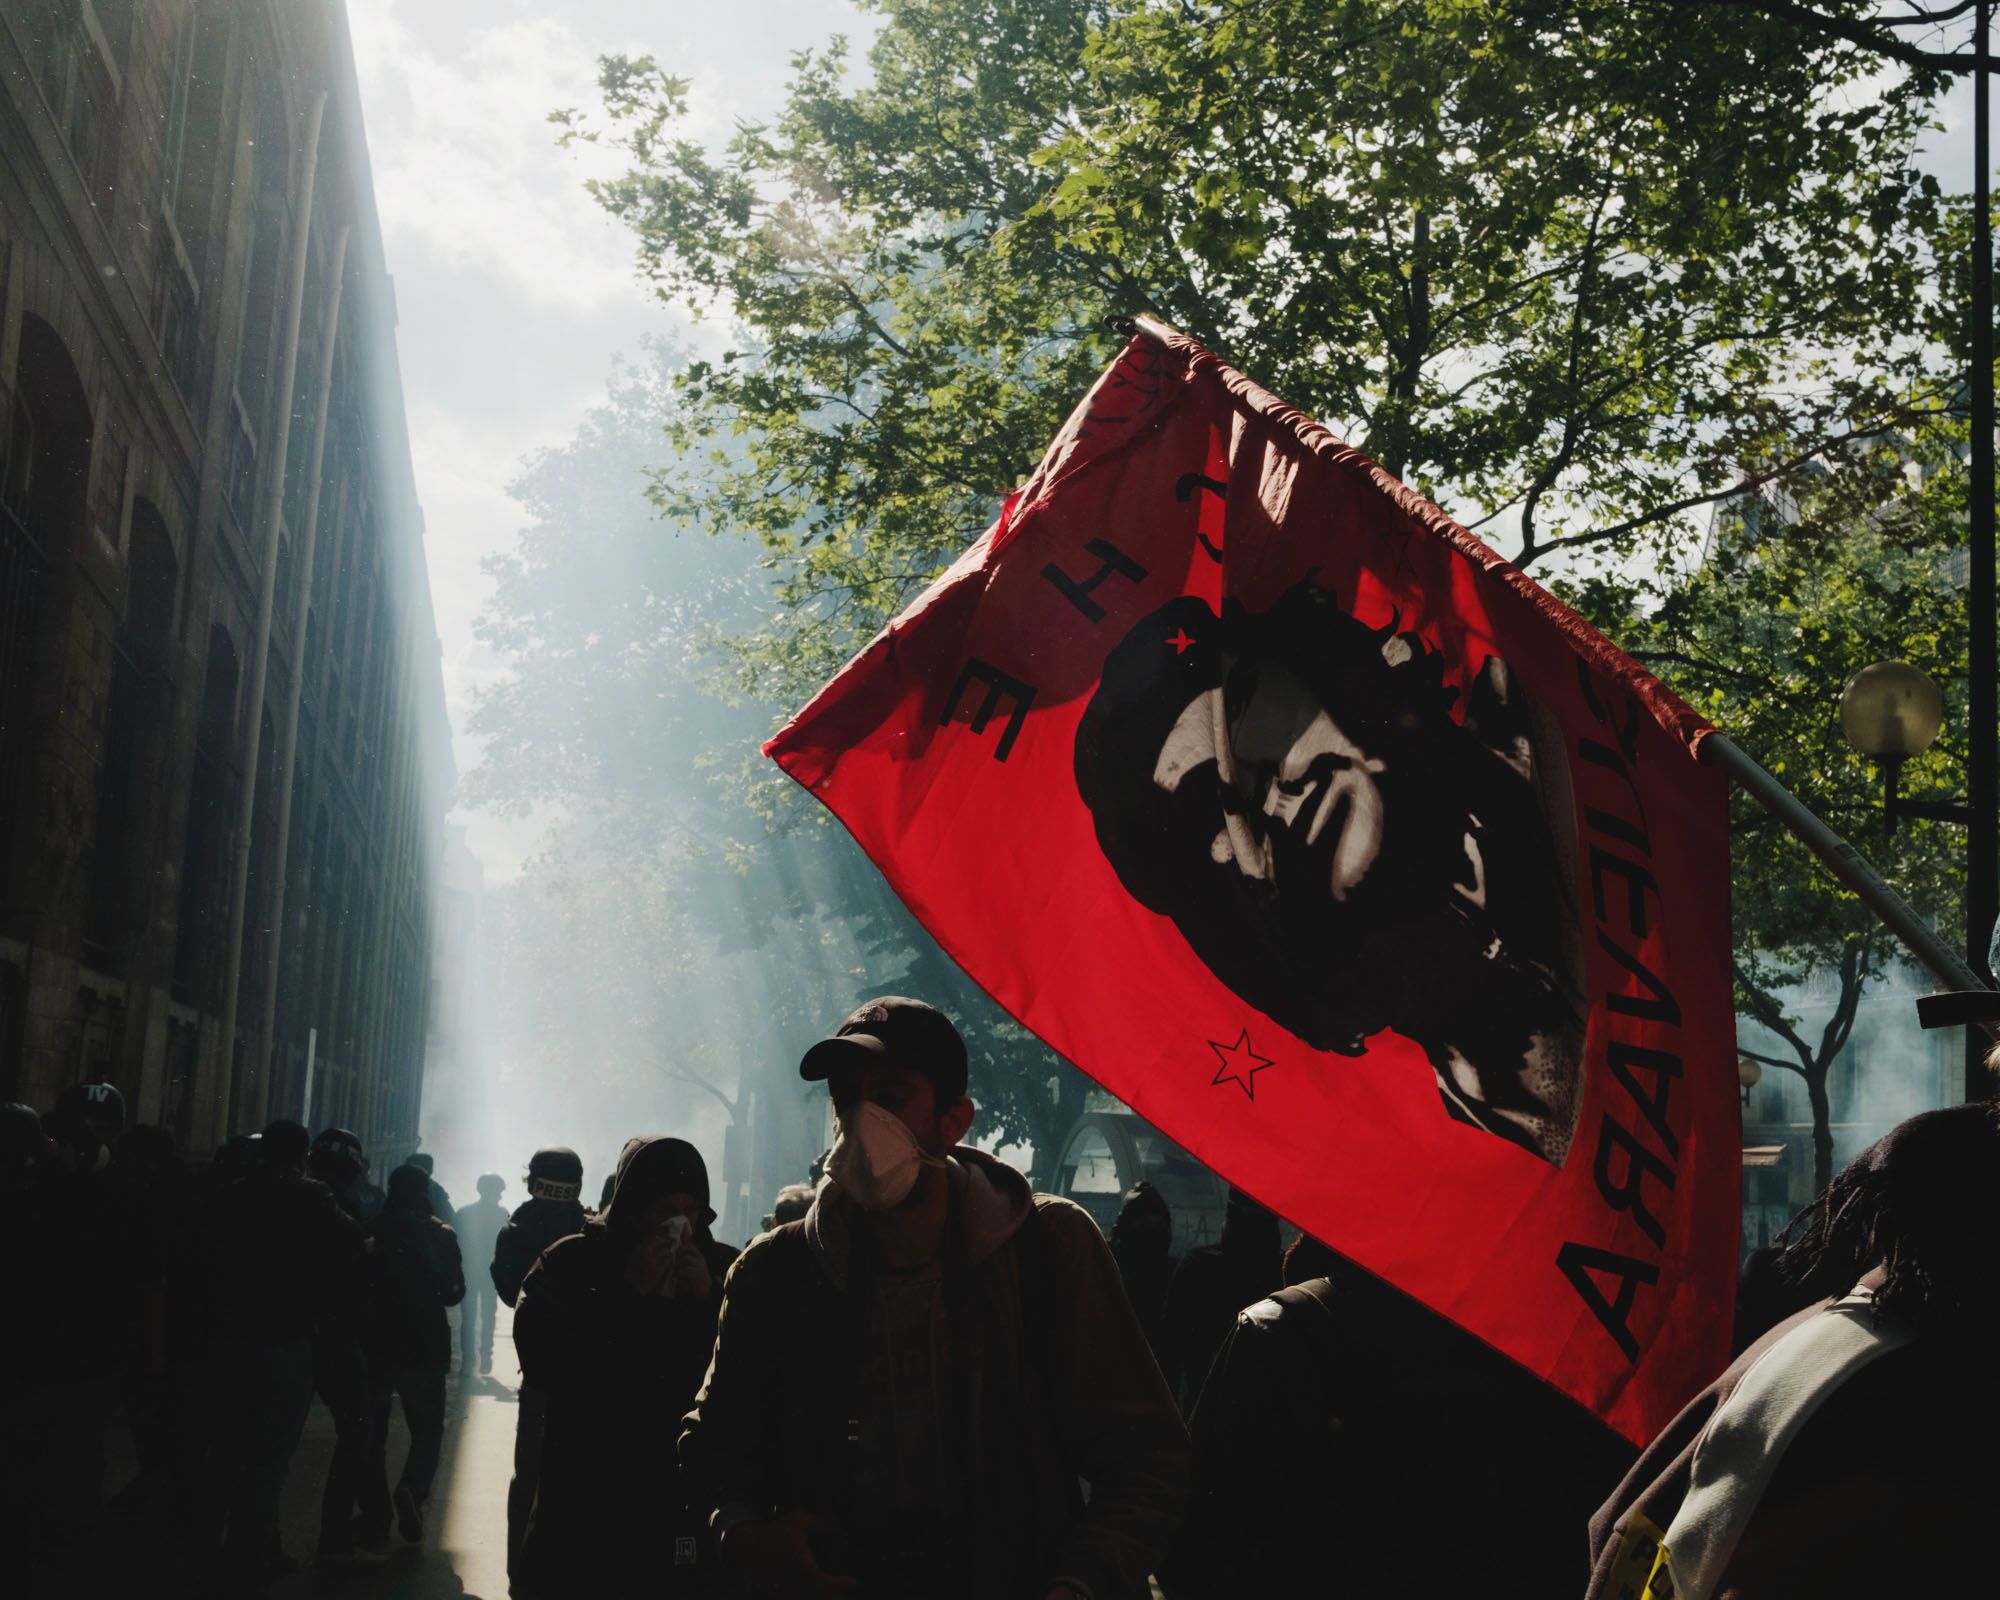  De violents affrontements opposent les forces de l'ordre et des manifestants d'ultra-gauche en marge du défilé de la fête du travail, Paris, 1er mai. 